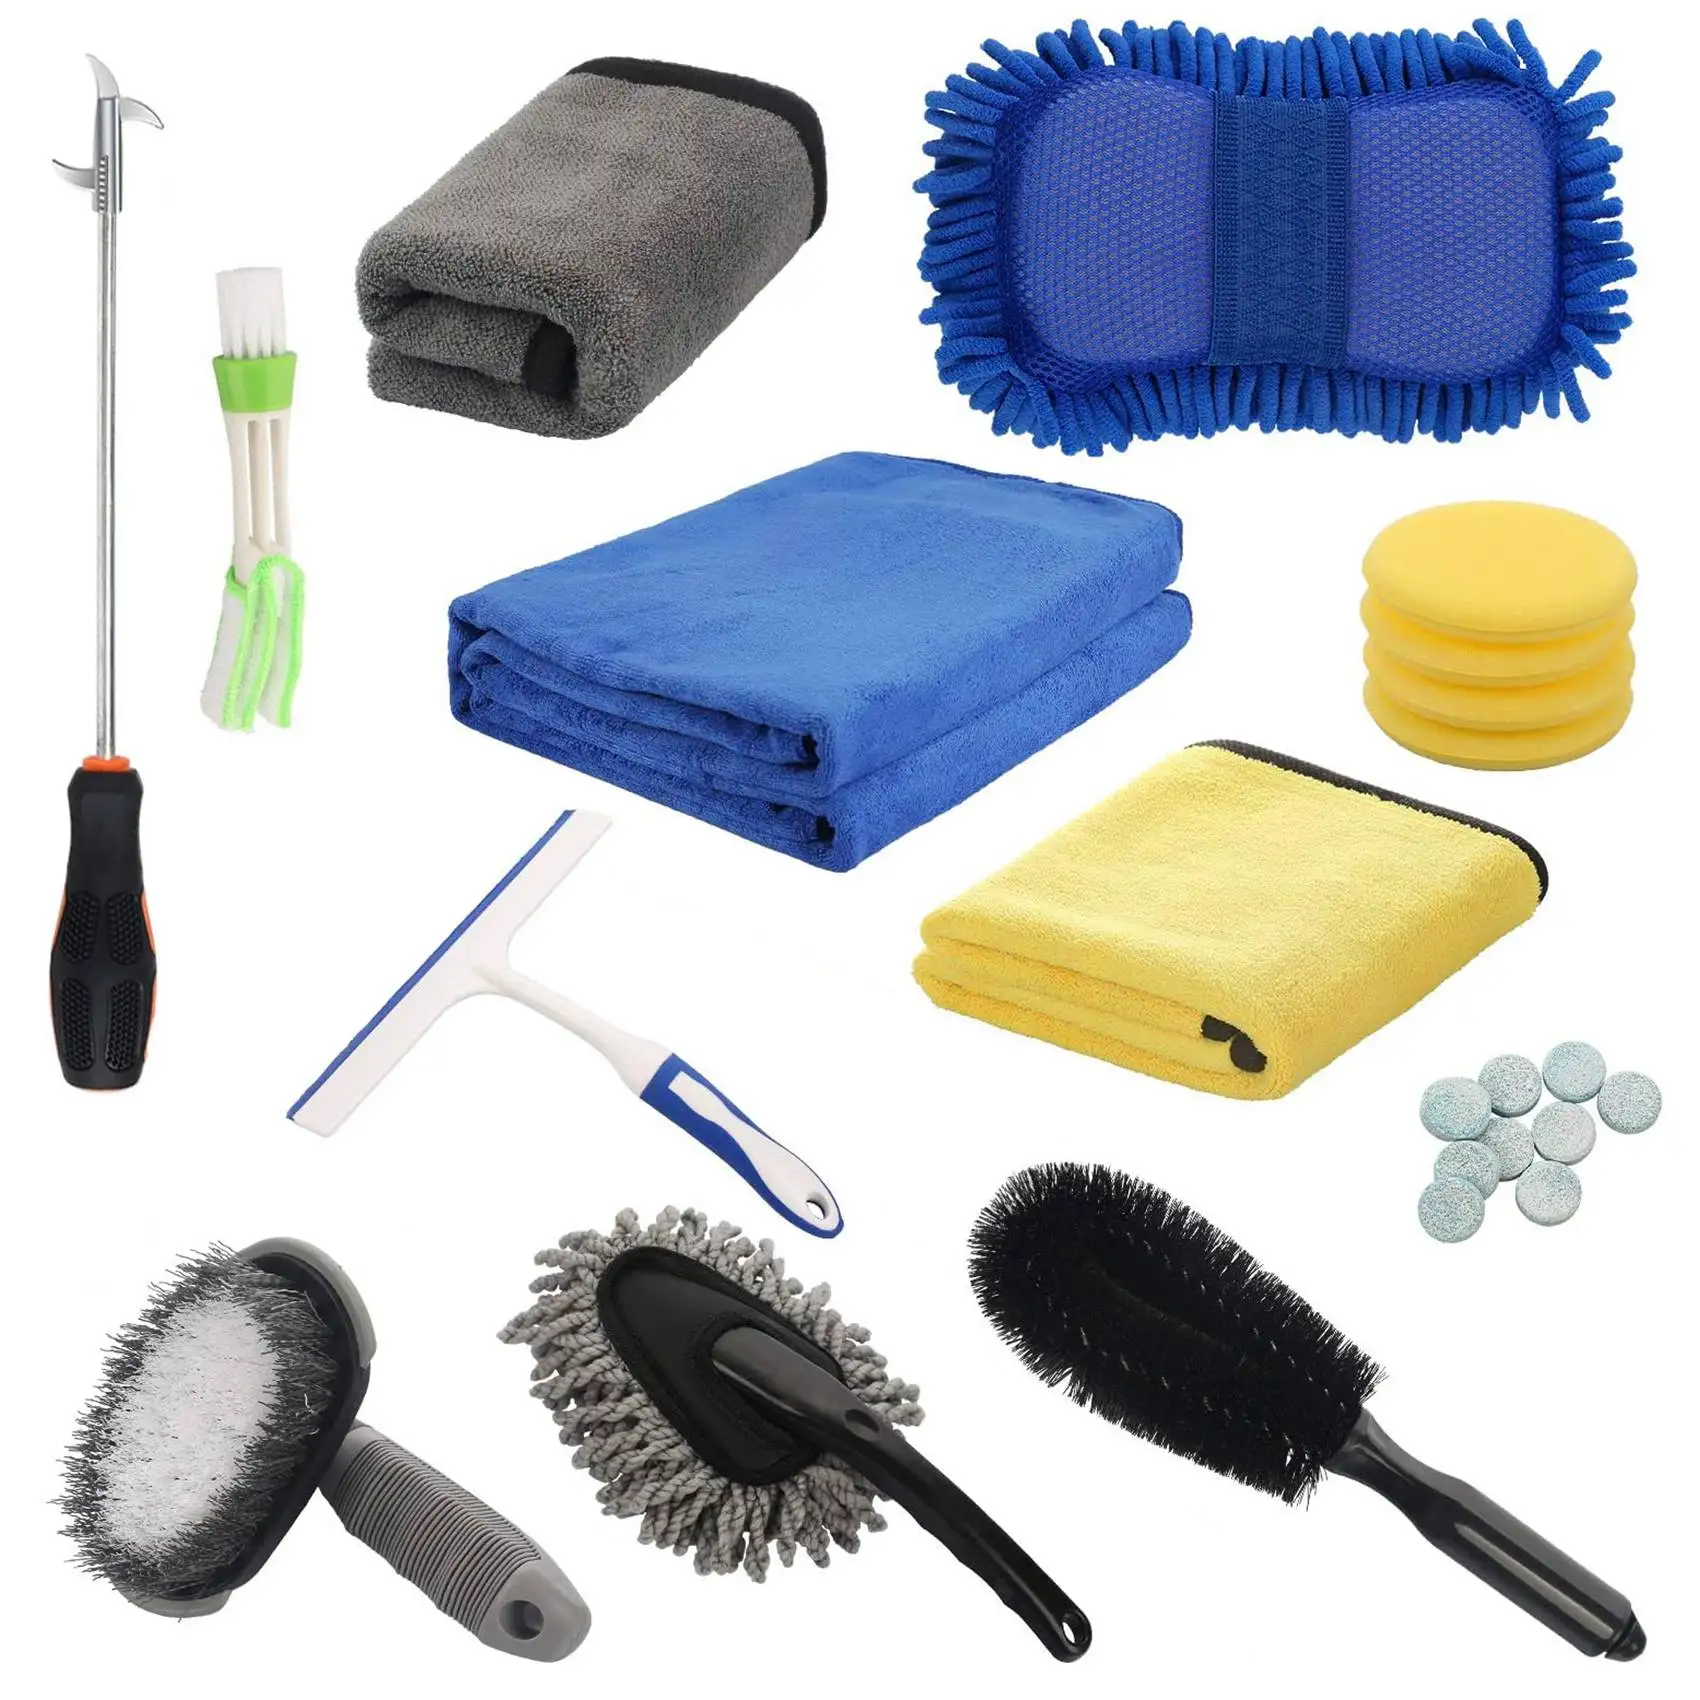 

24Pcs Car Wash Cleaning Tools Set Microfiber Gloves Towels Applicator Pads Sponge Water Scraper Tire Brush Car Care Kit